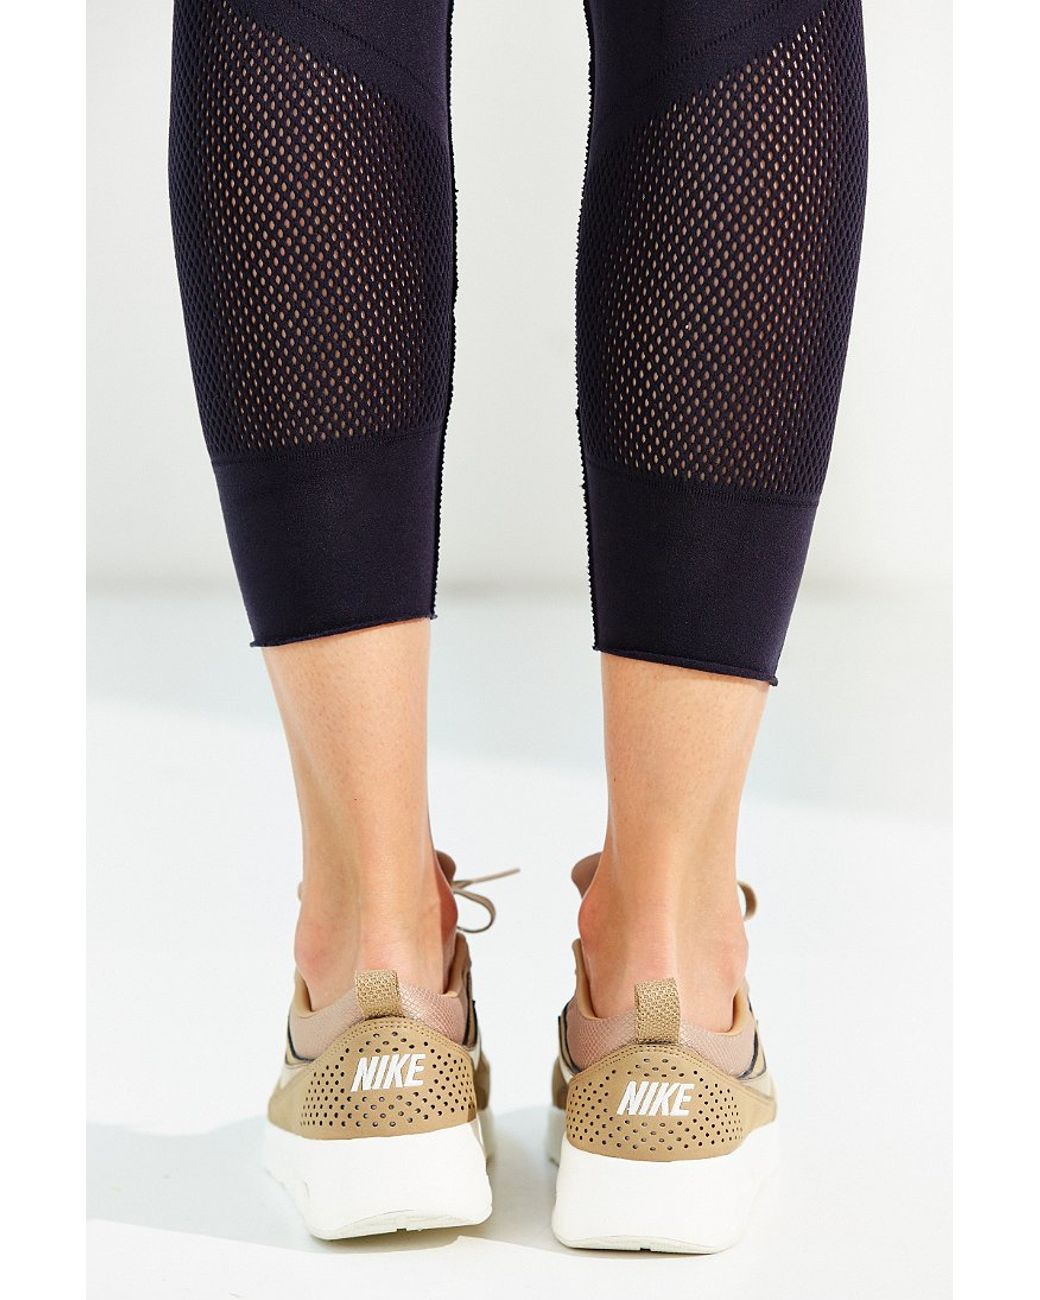 Nike Air Max Thea Premium Sneaker in Tan (Brown) | Lyst Canada